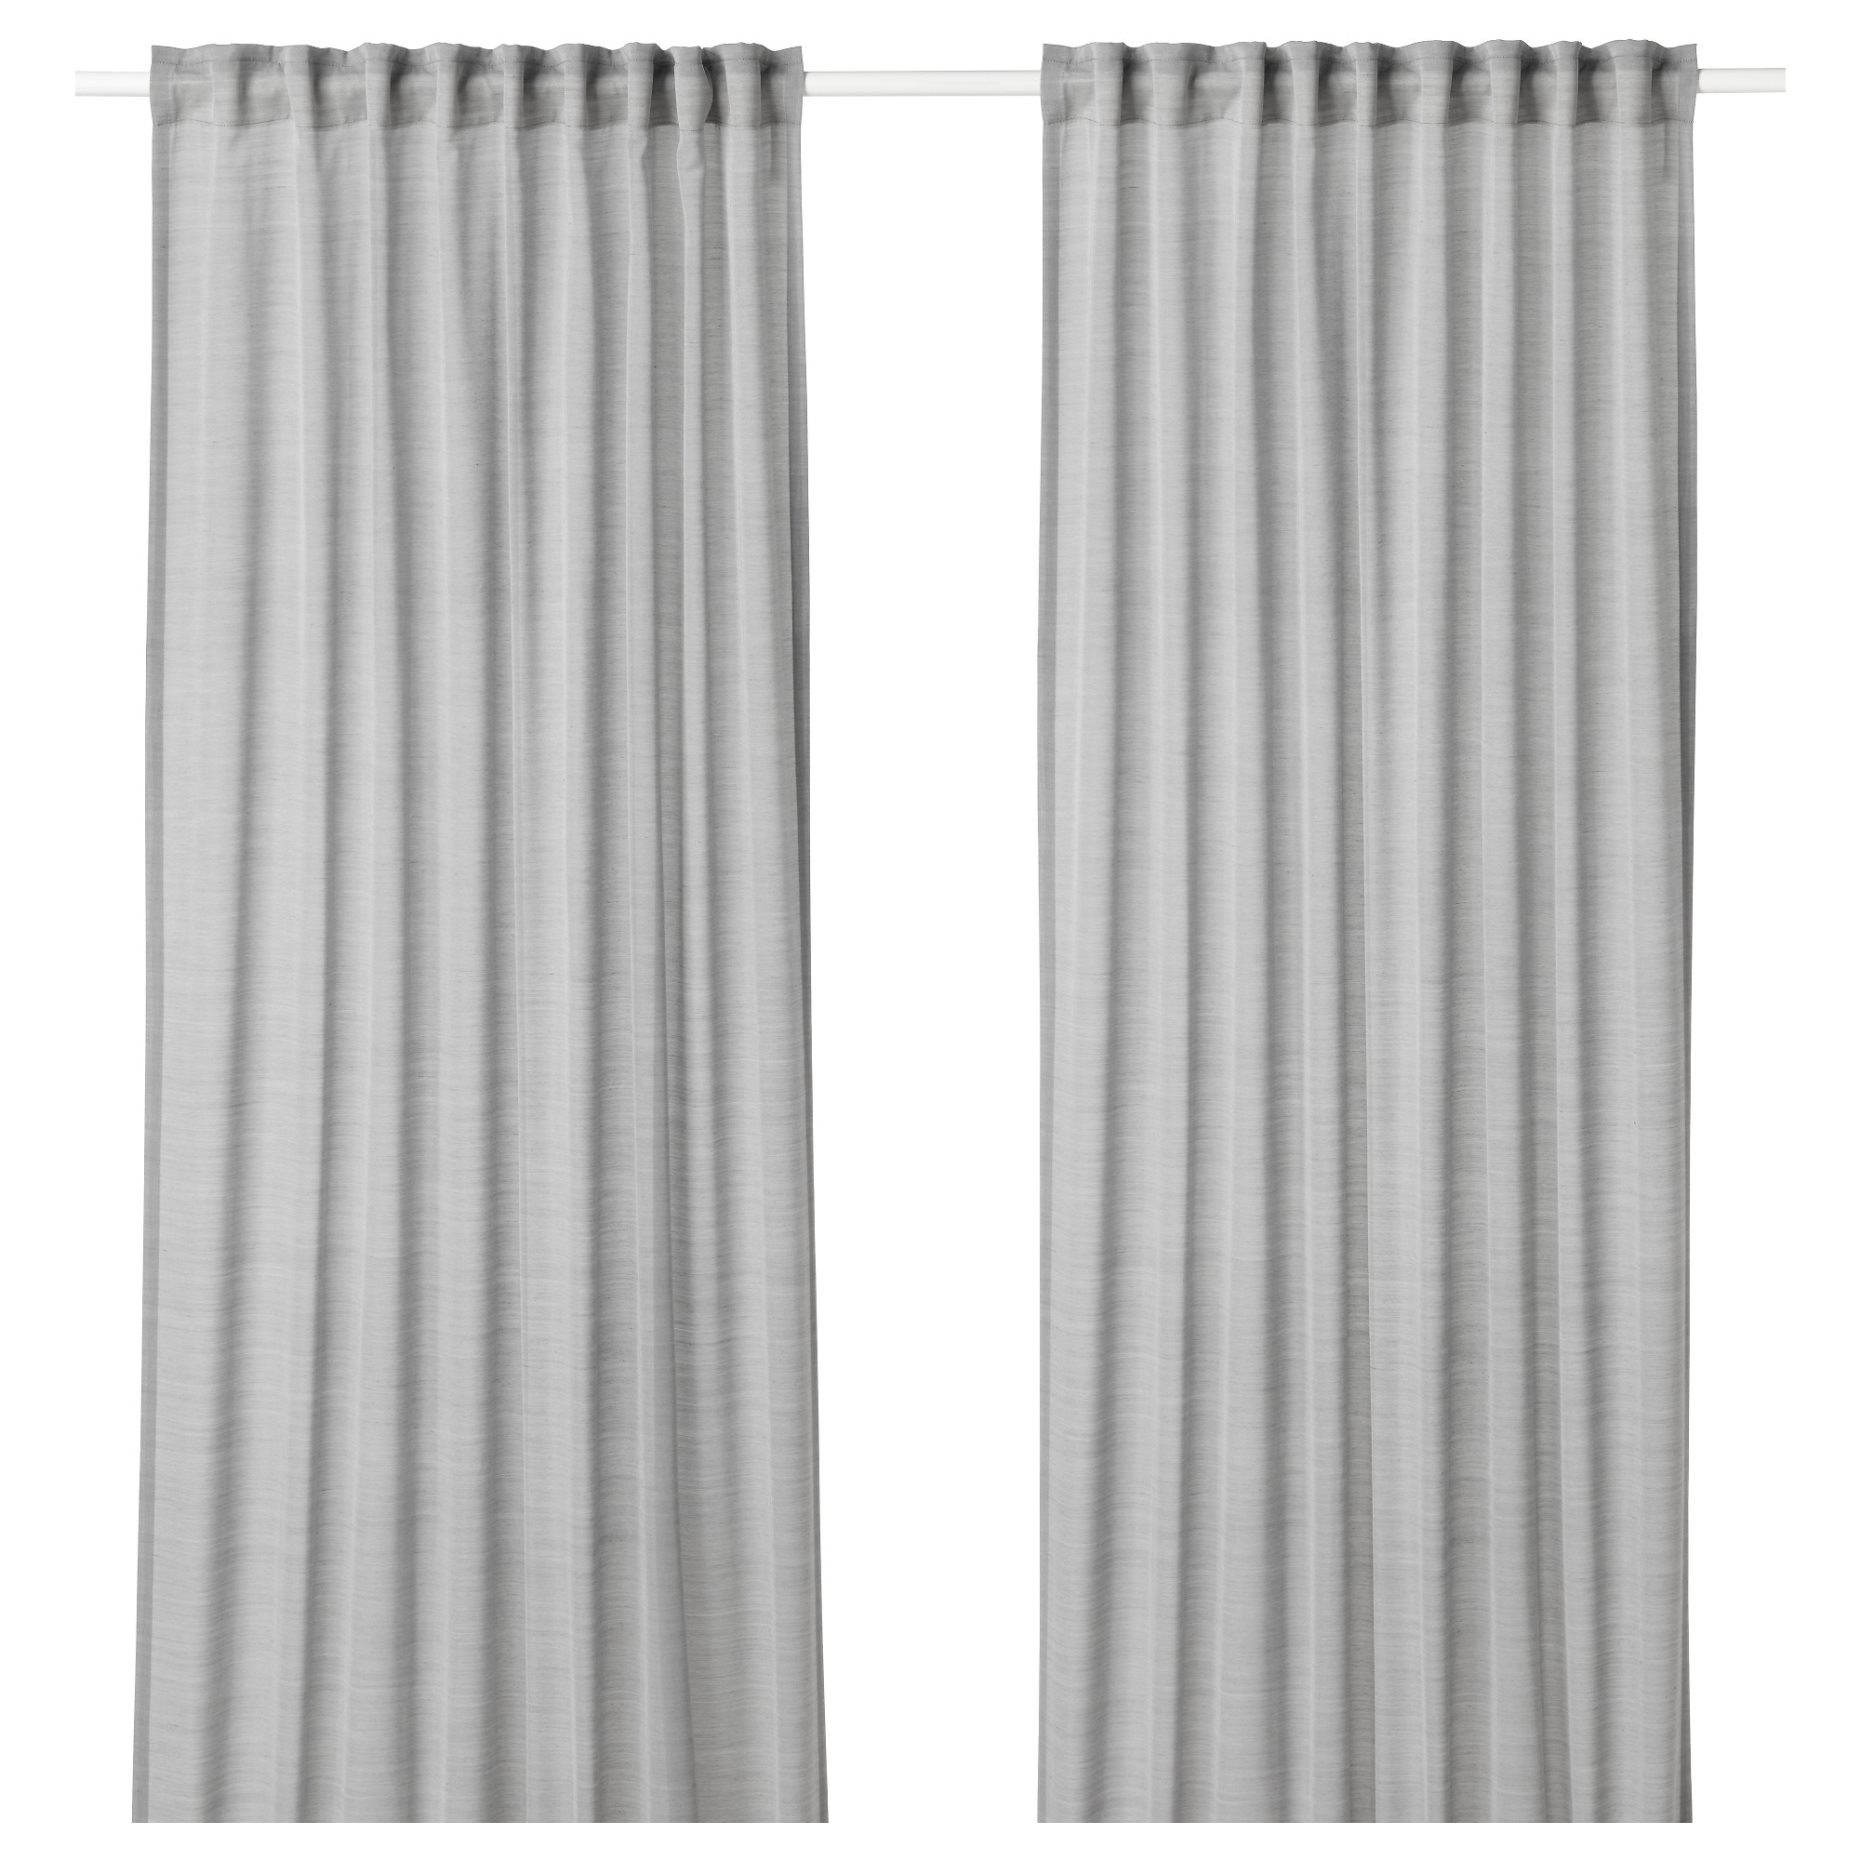 HILJA, curtains, 1 pair, 903.907.35